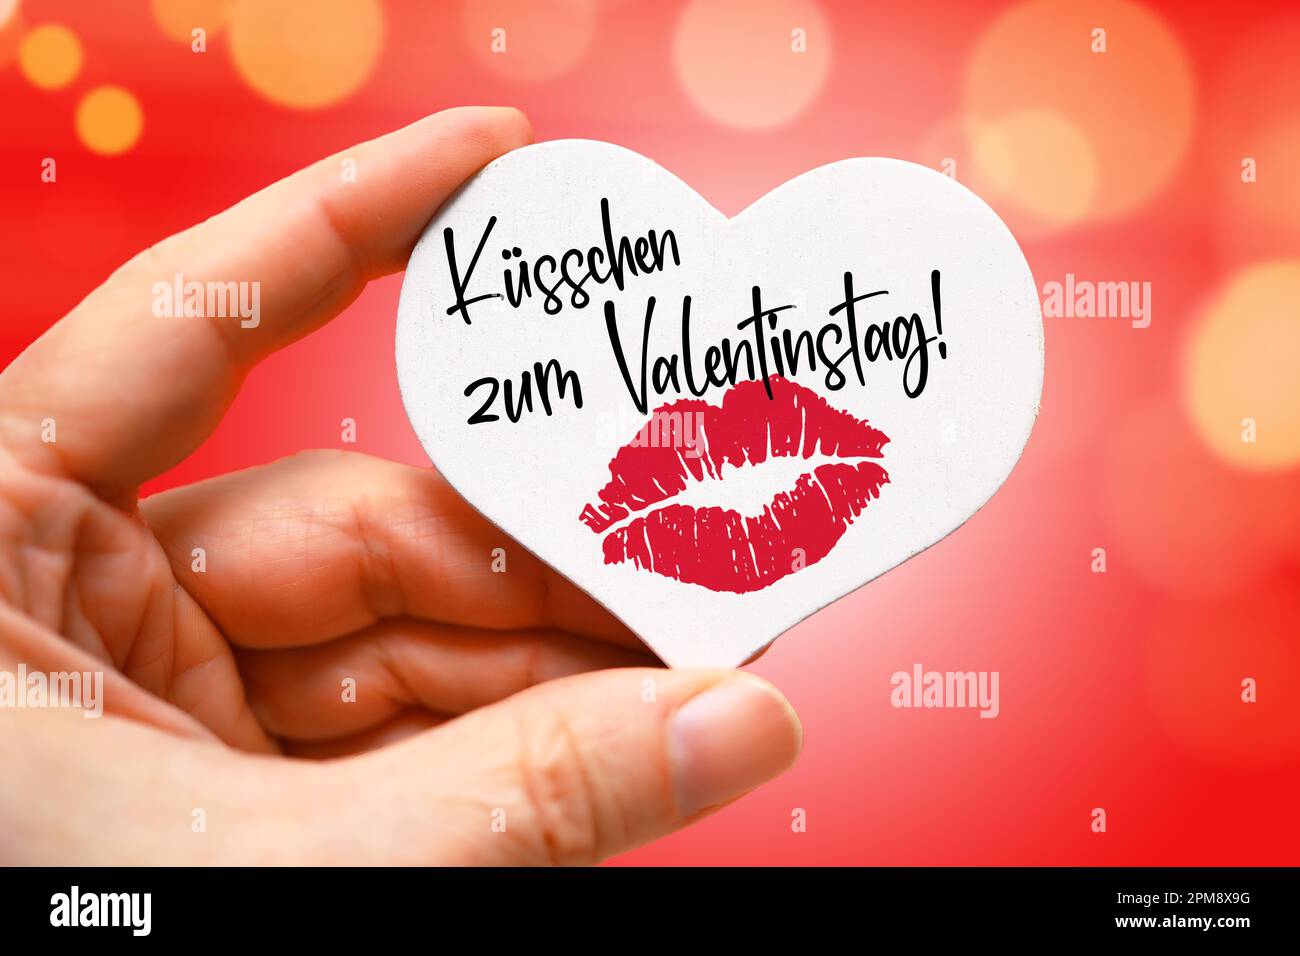 FOTOMONTAGE, Hand hält weißes Herz mit Lippenabdruck und Aufschrift Küsschen zum Valentinstag Stock Photo